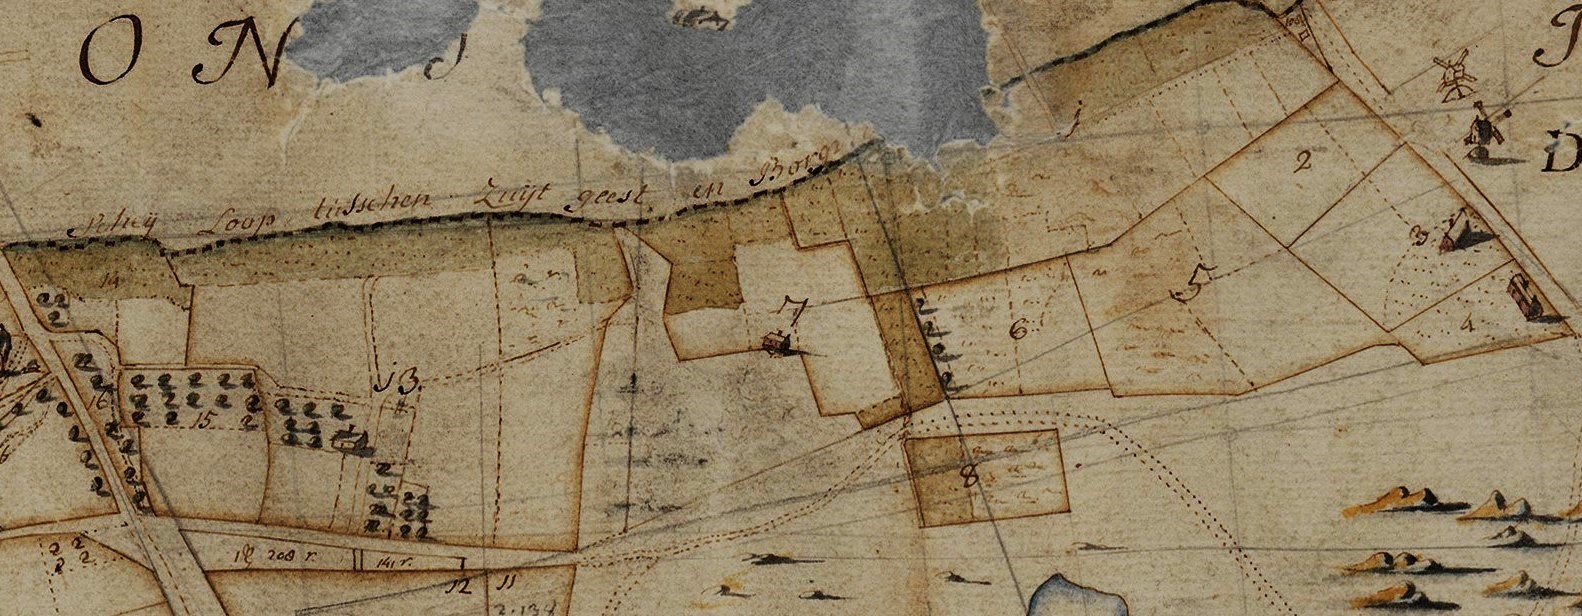 Bron: Kaart H. Adan, 1770. West-Brabants Archief